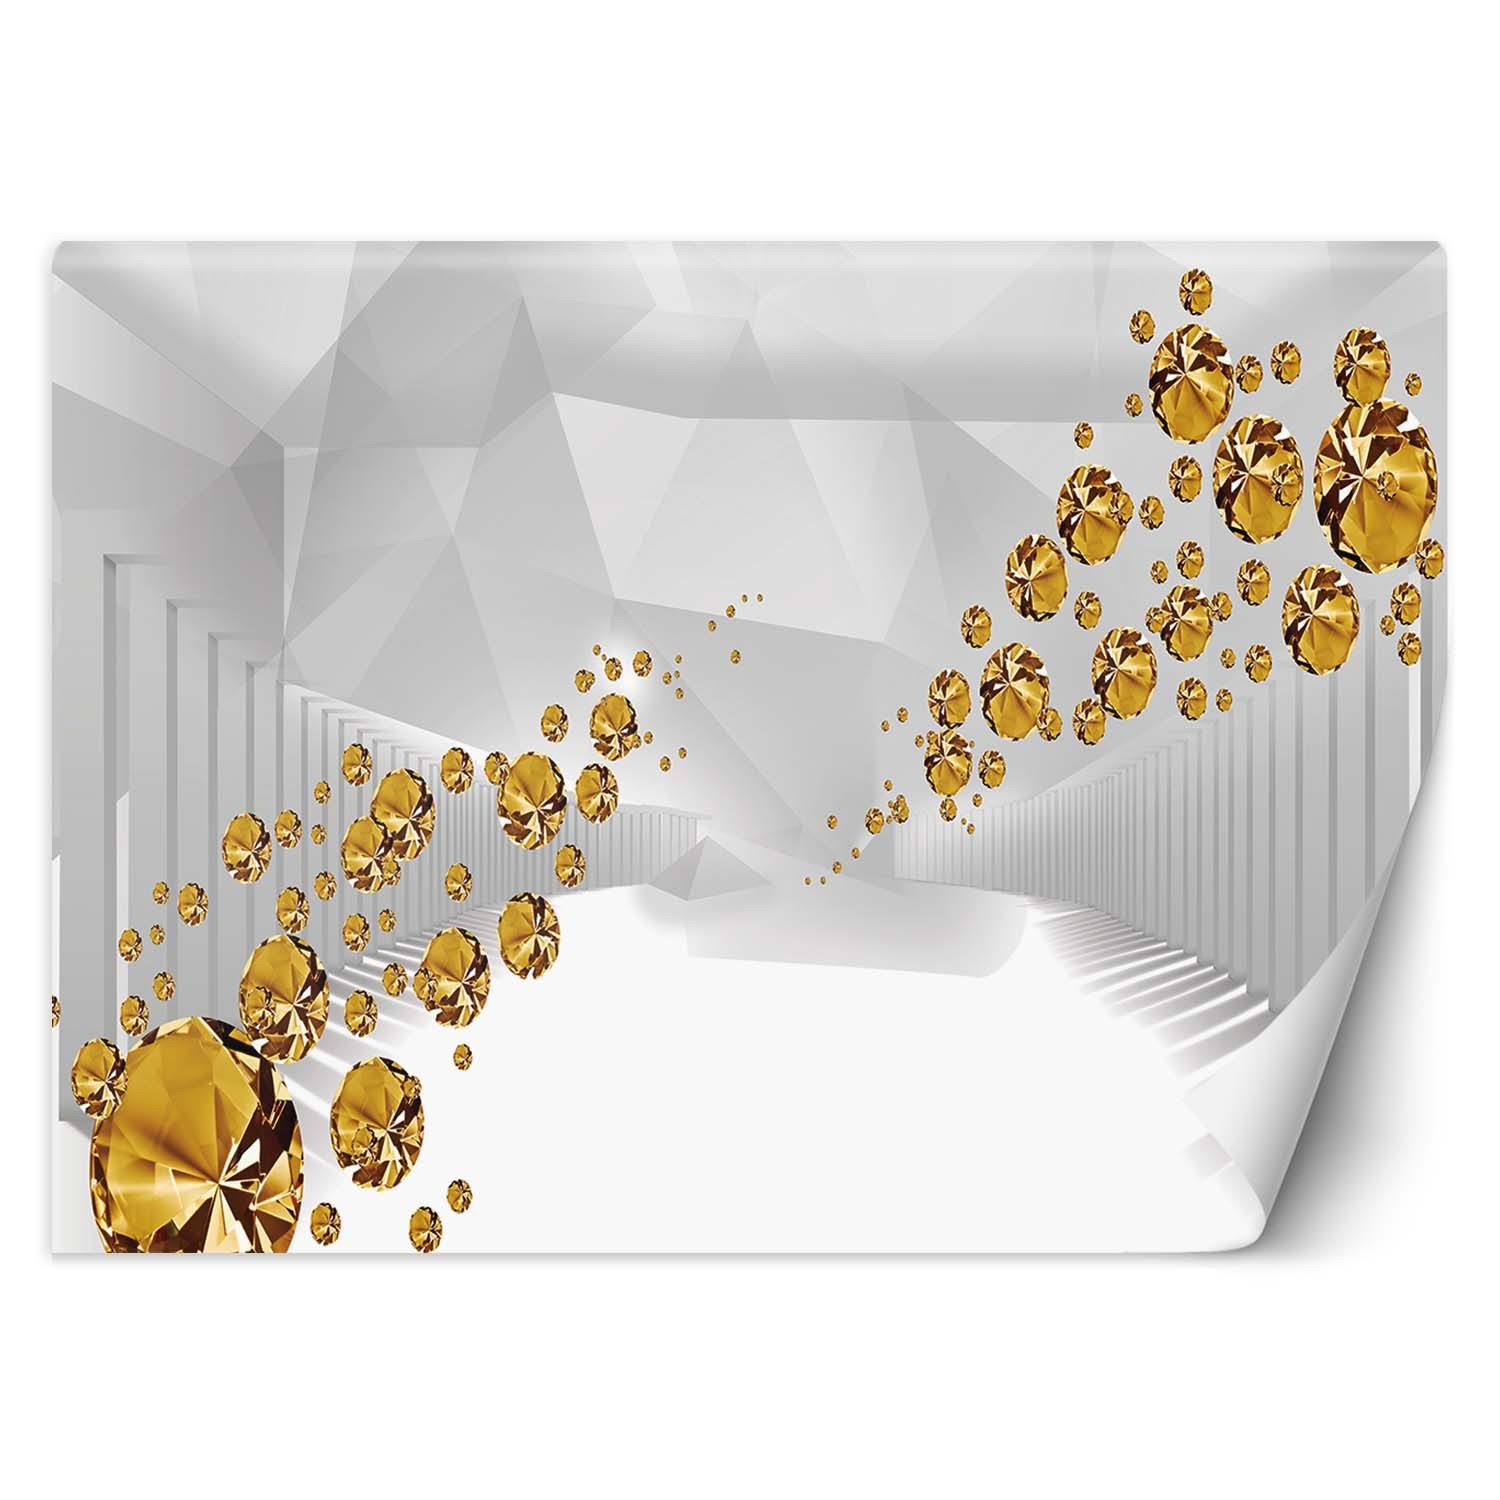 Trend24 – Behang – Gouden Stenen In Een Abstracte Tunnel – Behangpapier – Fotobehang 3D – Behang Woonkamer – 450x315x2 cm – Incl. behanglijm